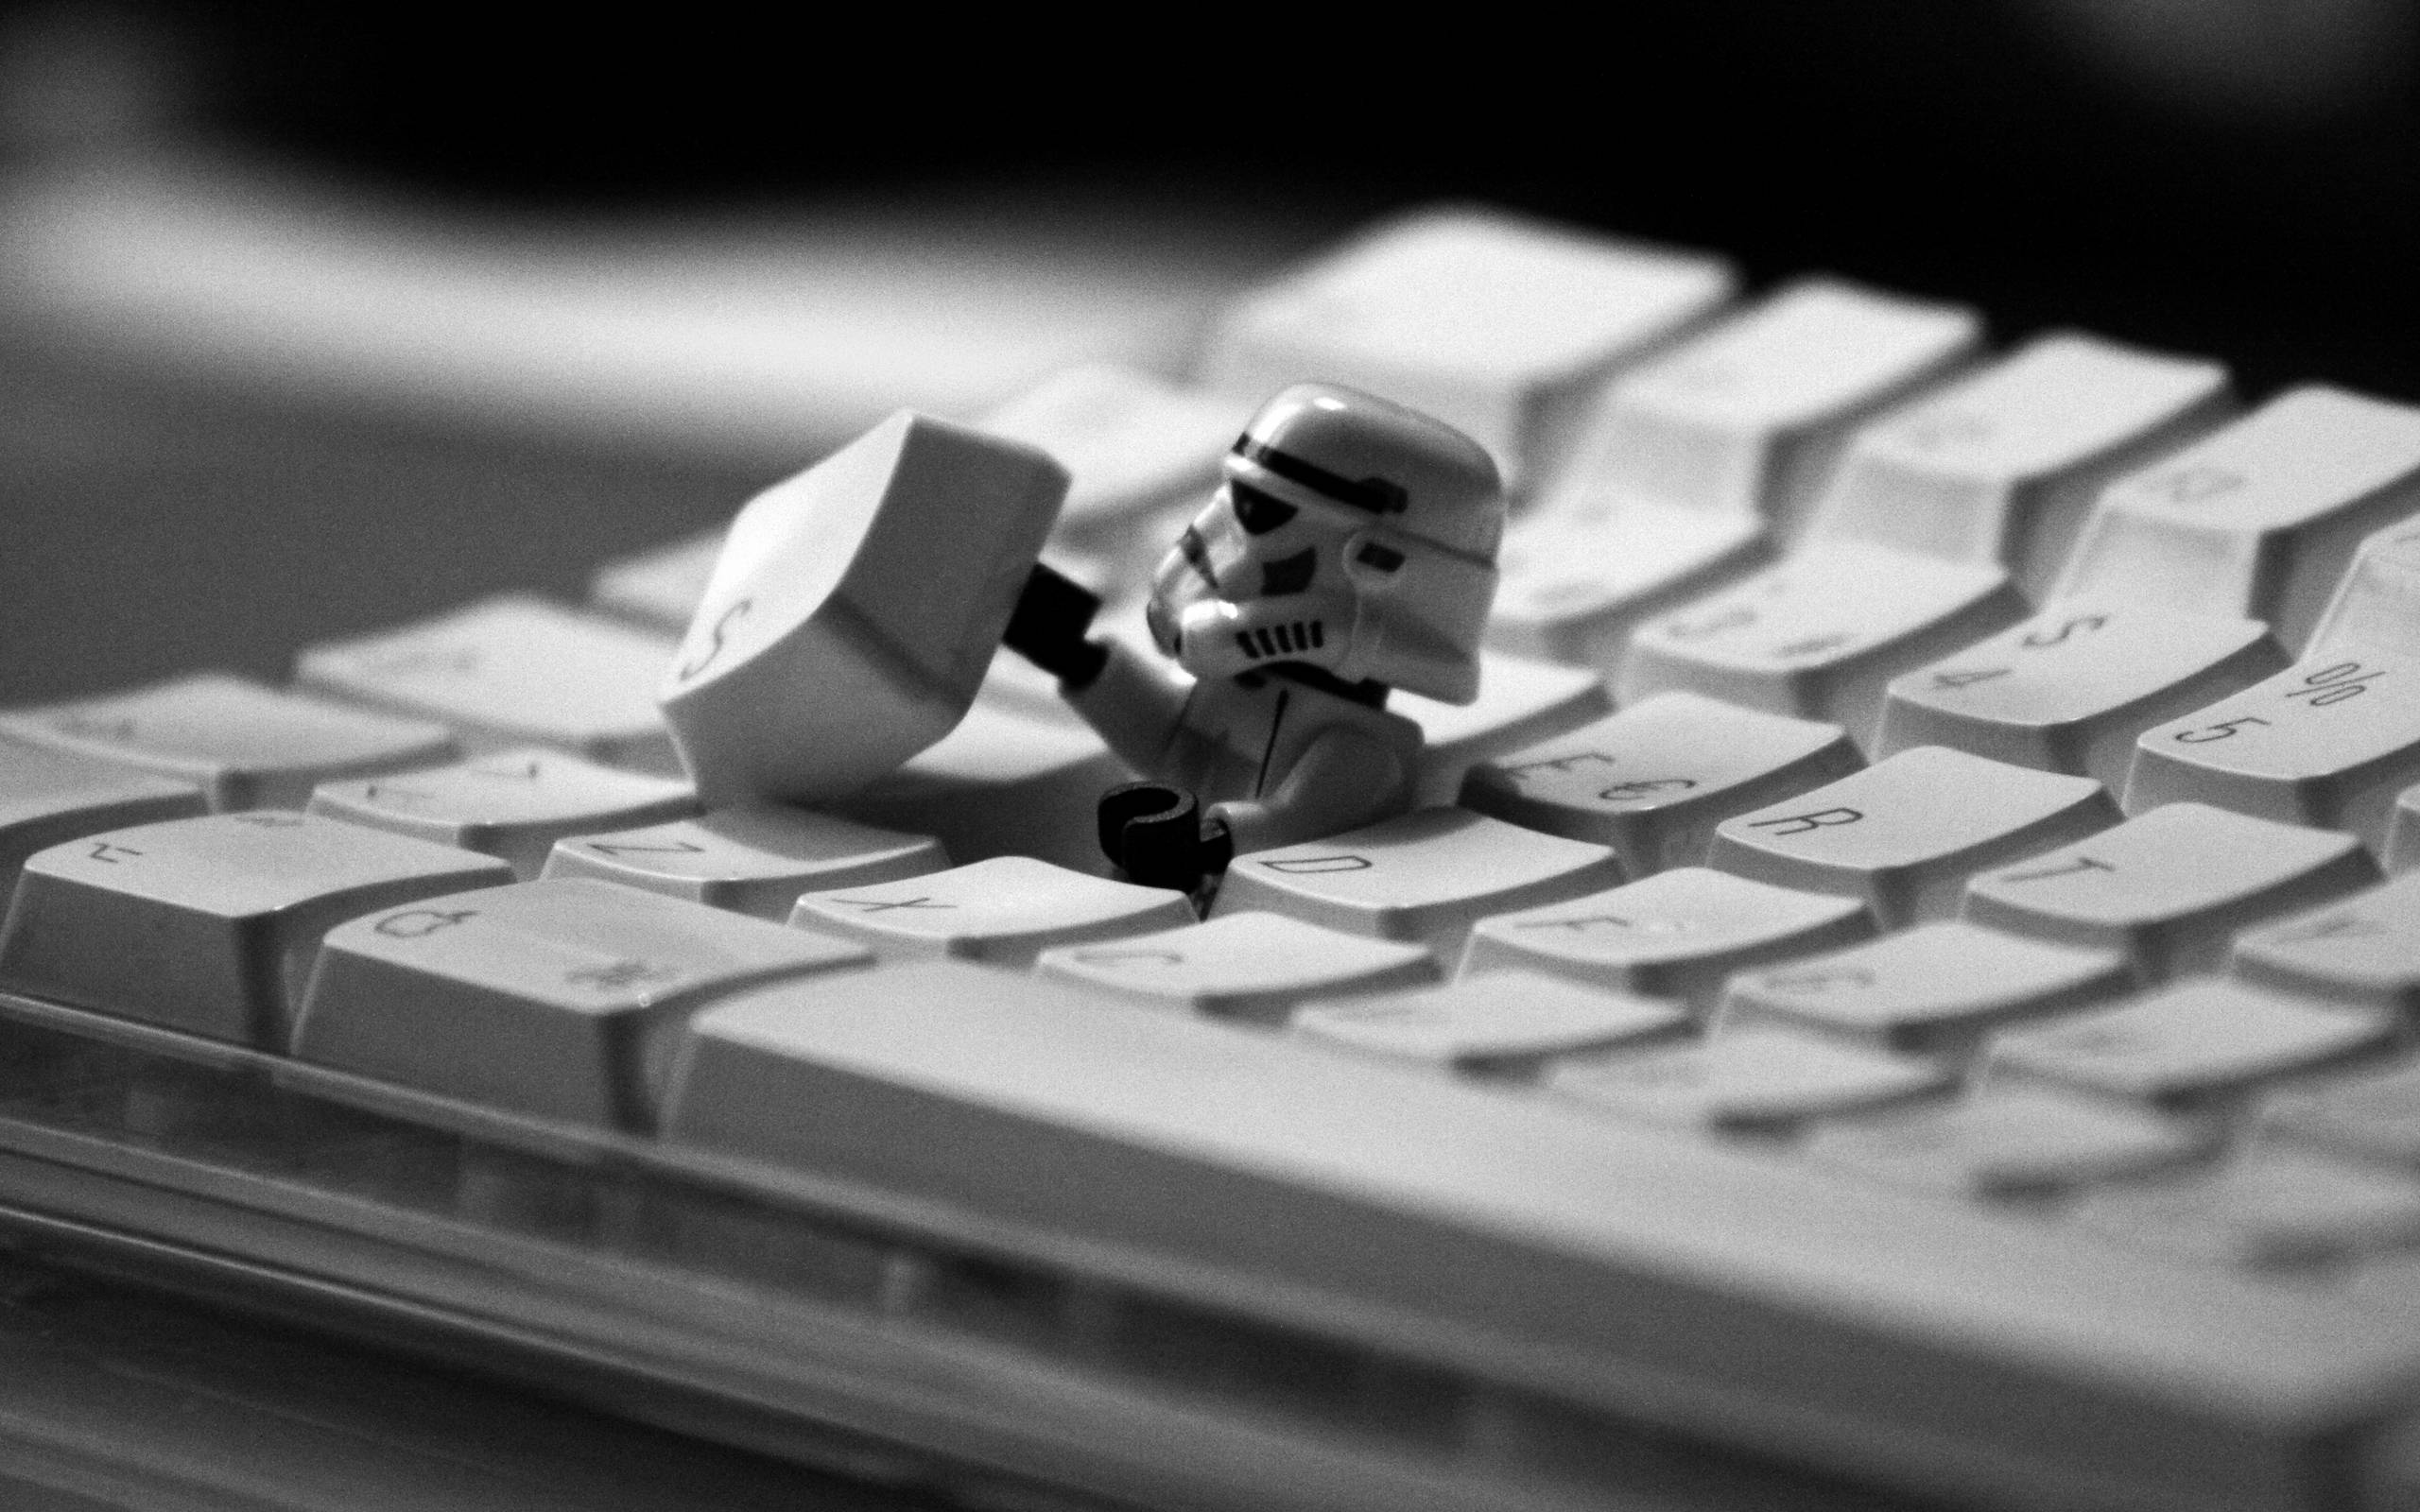 Star Wars Keyboard